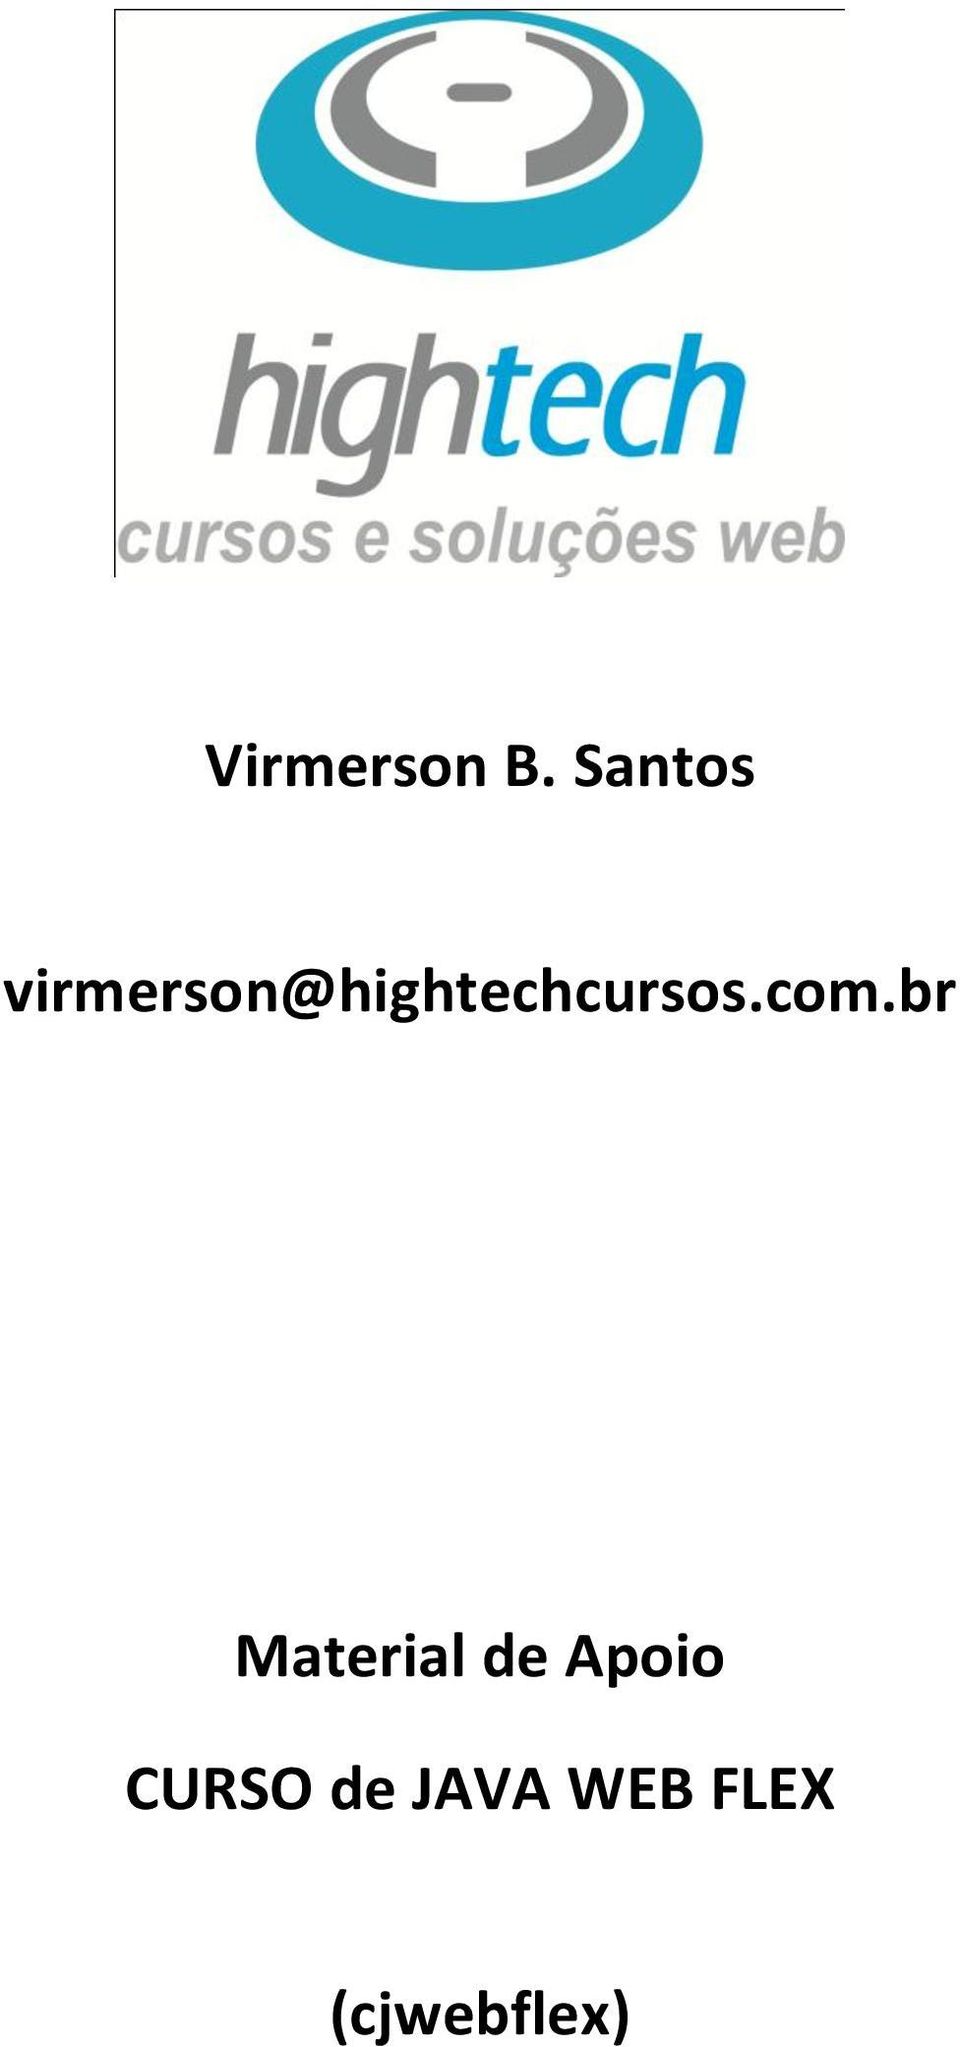 virmerson@hightechcursos.